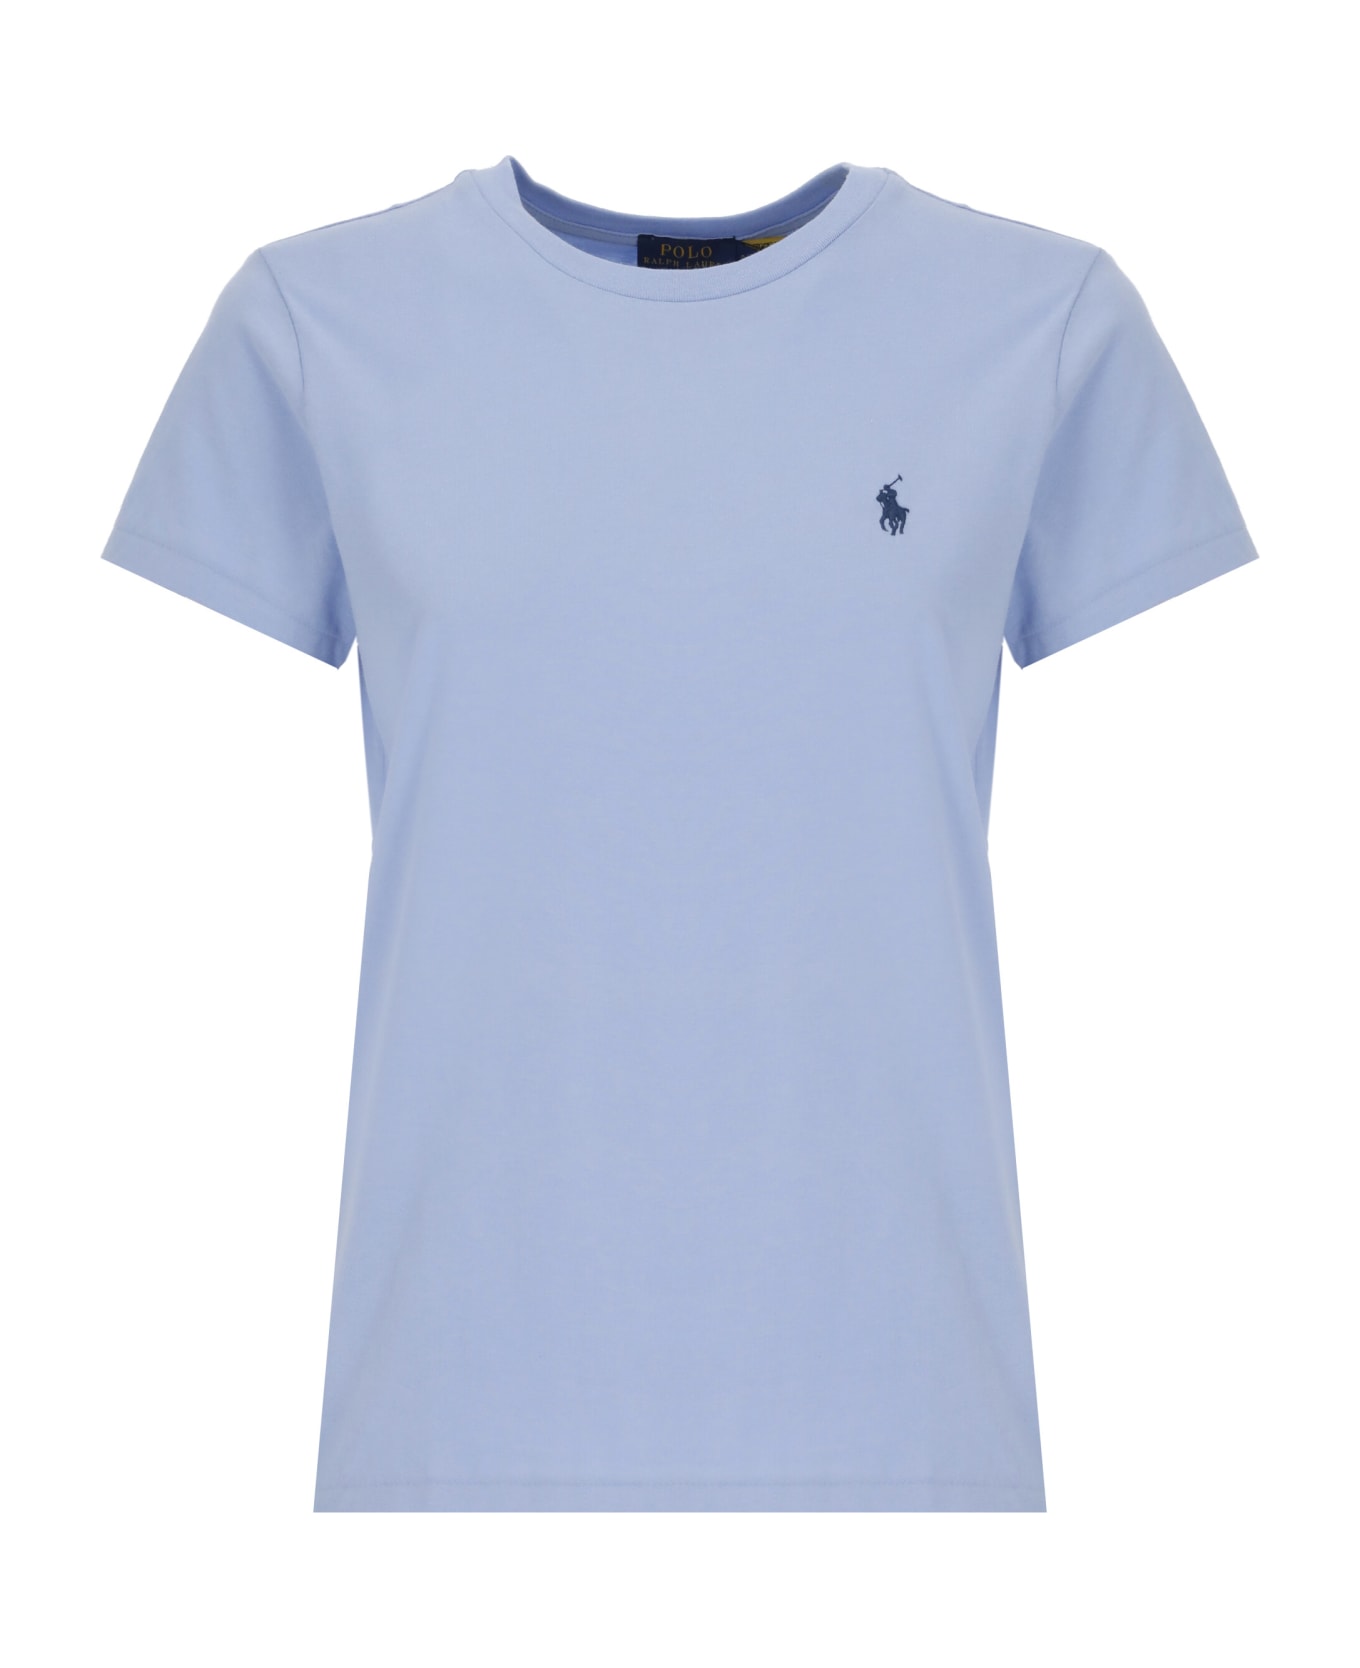 Ralph Lauren T-shirt With Pony - Dress Shirt Blue Tシャツ